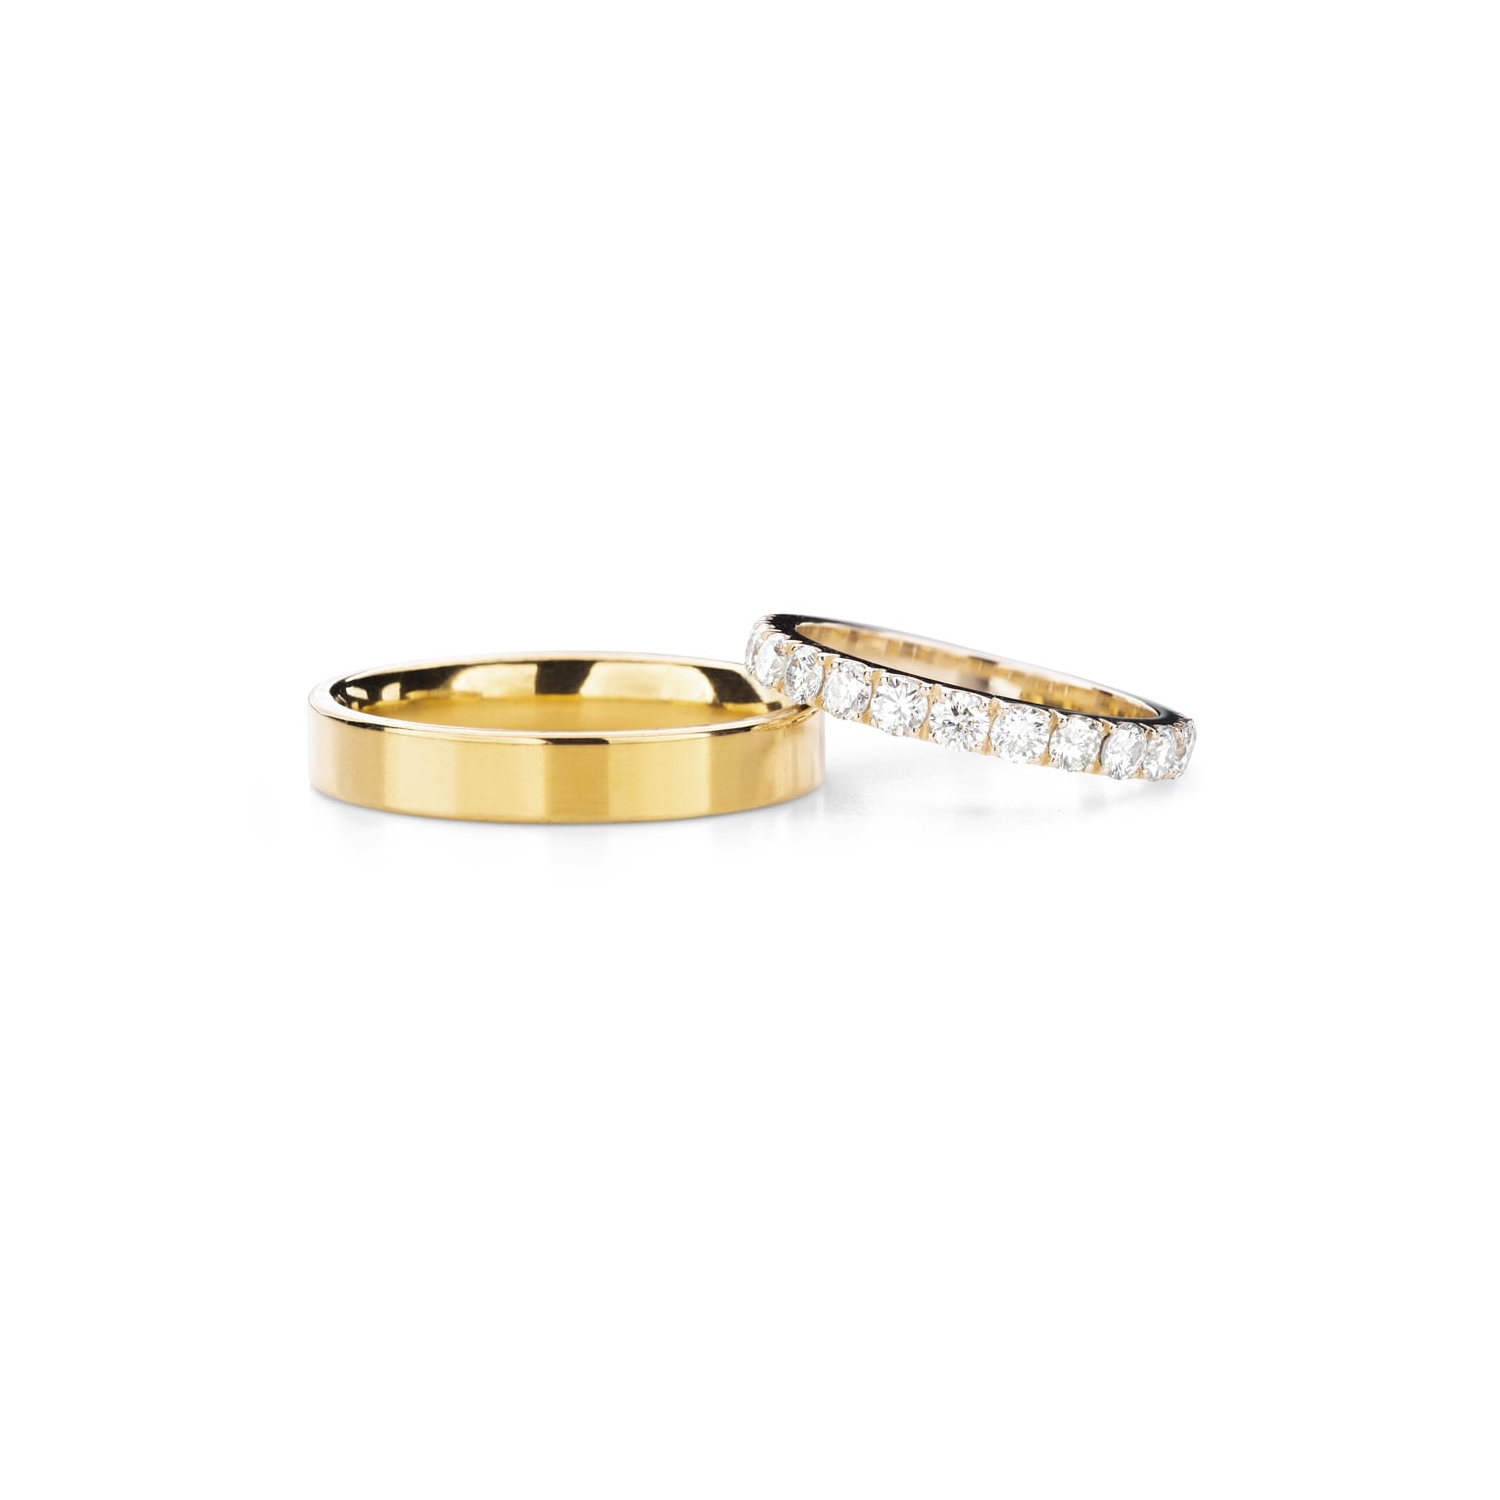 Золотые обручальные кольца с бриллиантами "VKA 342"